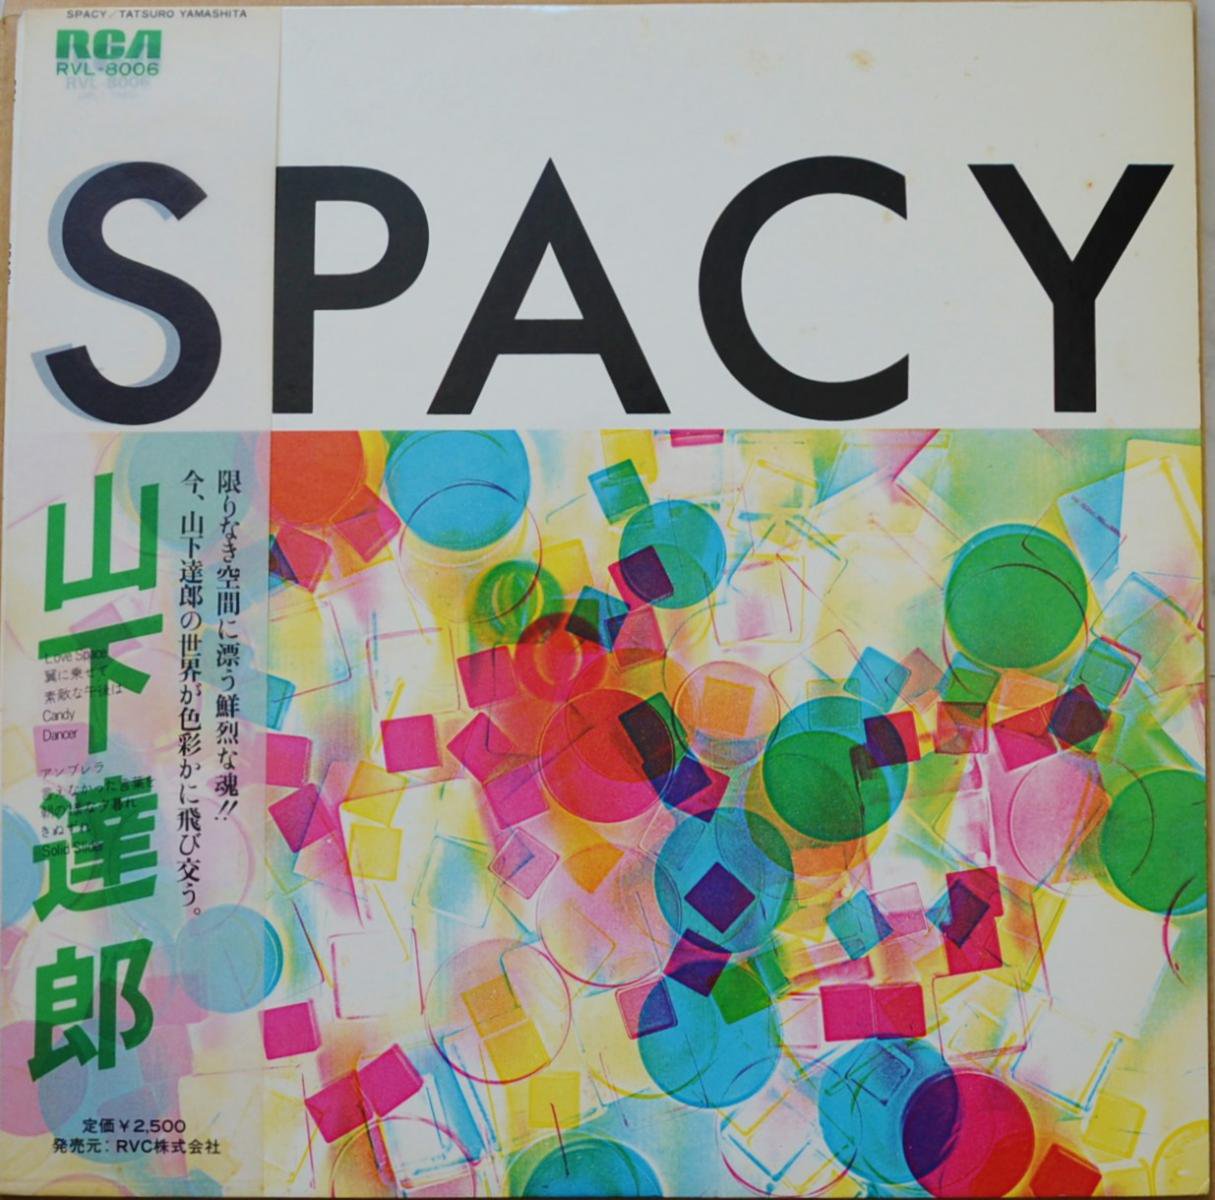 山下達郎 TATSURO YAMASHITA / SPACY (LP)